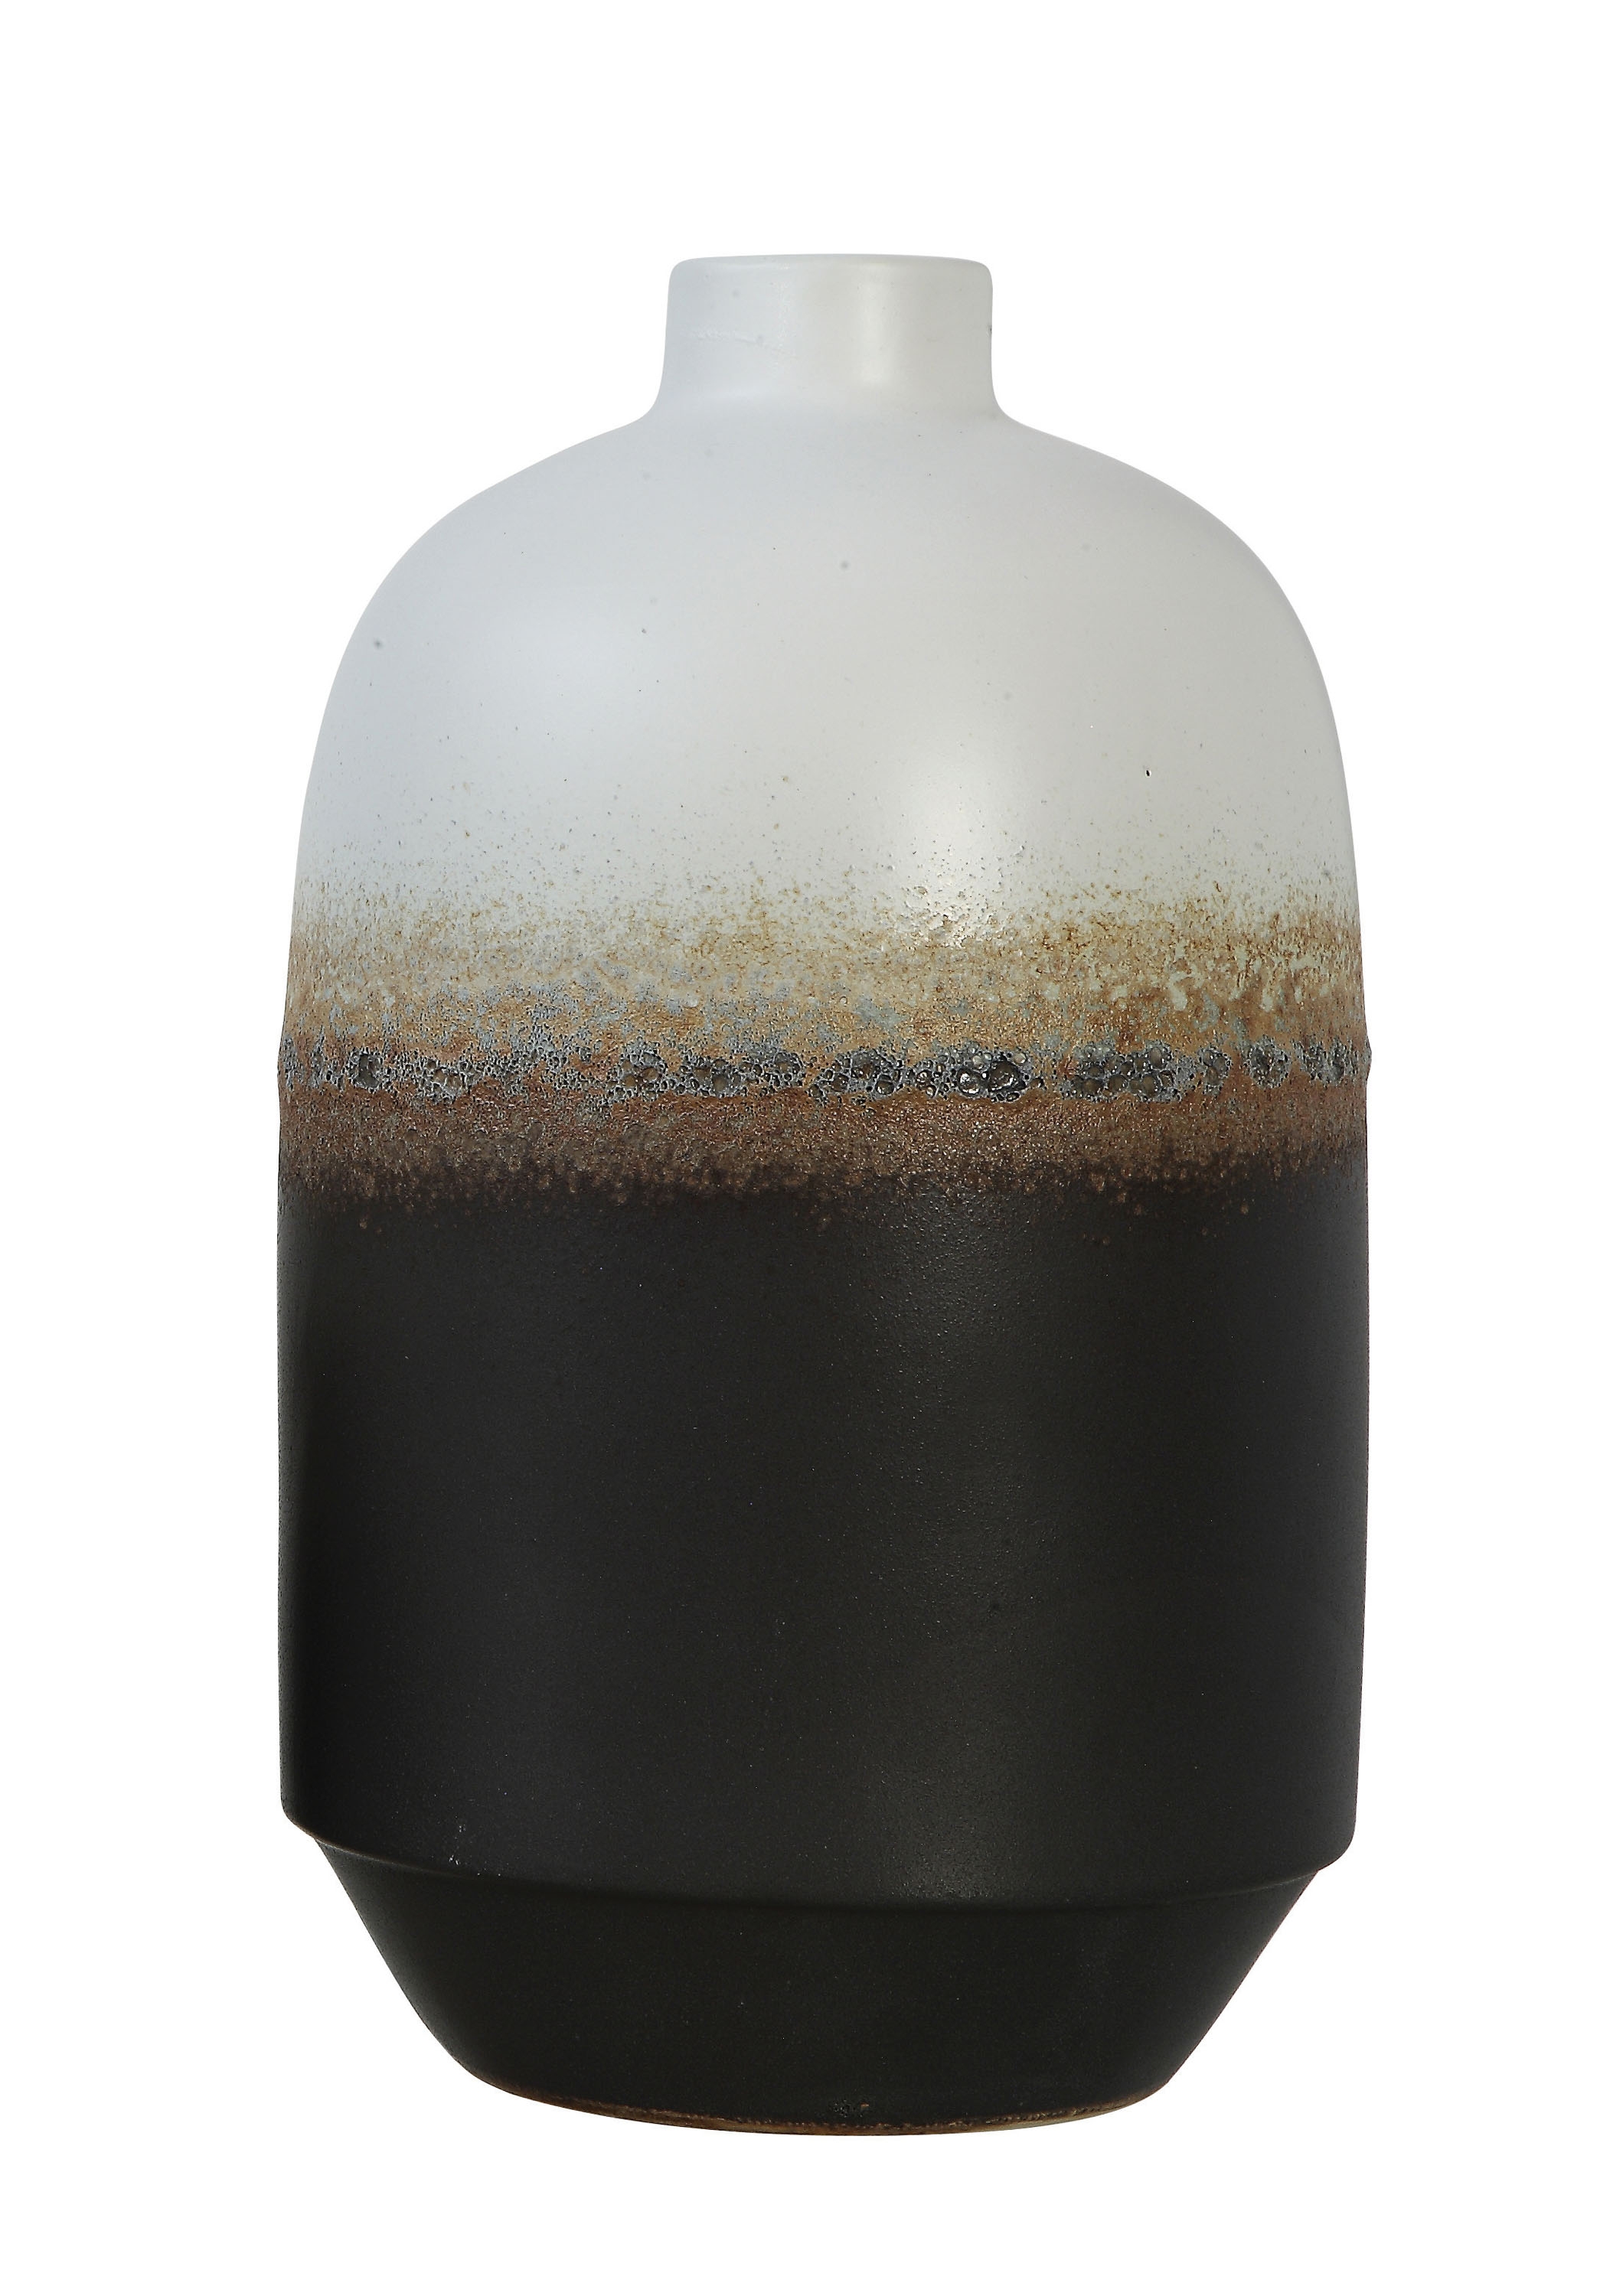 Solomon Ceramic Vase, Large - Image 0